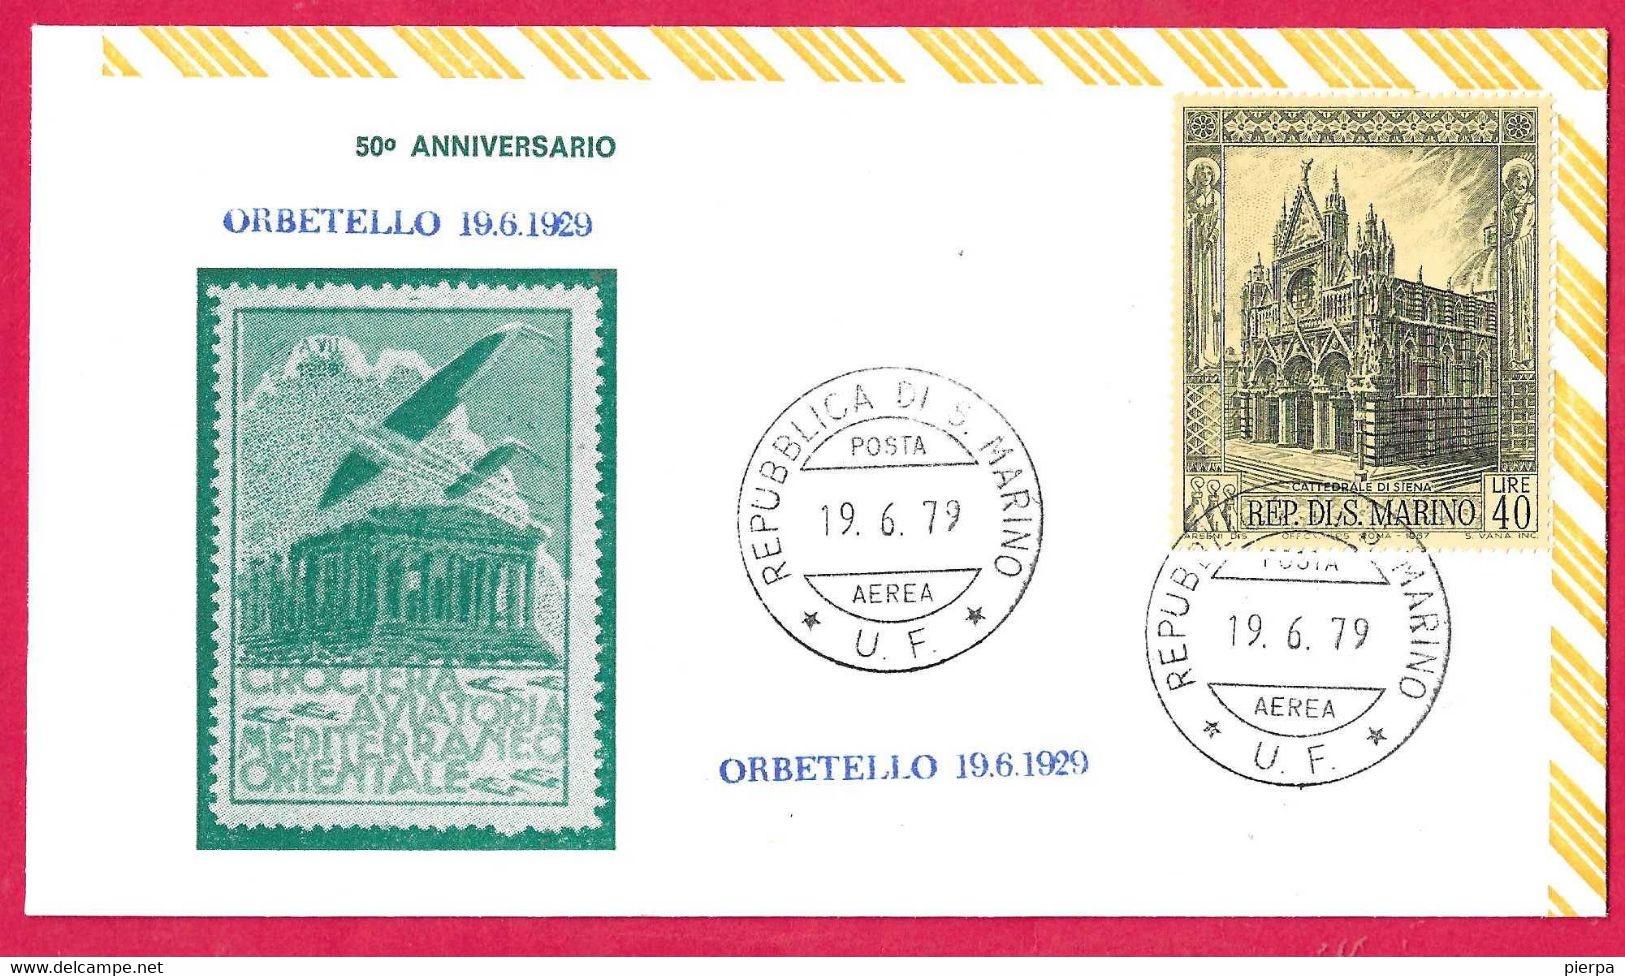 SAN MARINO - BUSTA COMMEMORATIVA 50° CROCIERA AVIATORIA MEDITERRANEO ORIENTALE * 19.GIU.1979* ORBETELLO - Covers & Documents